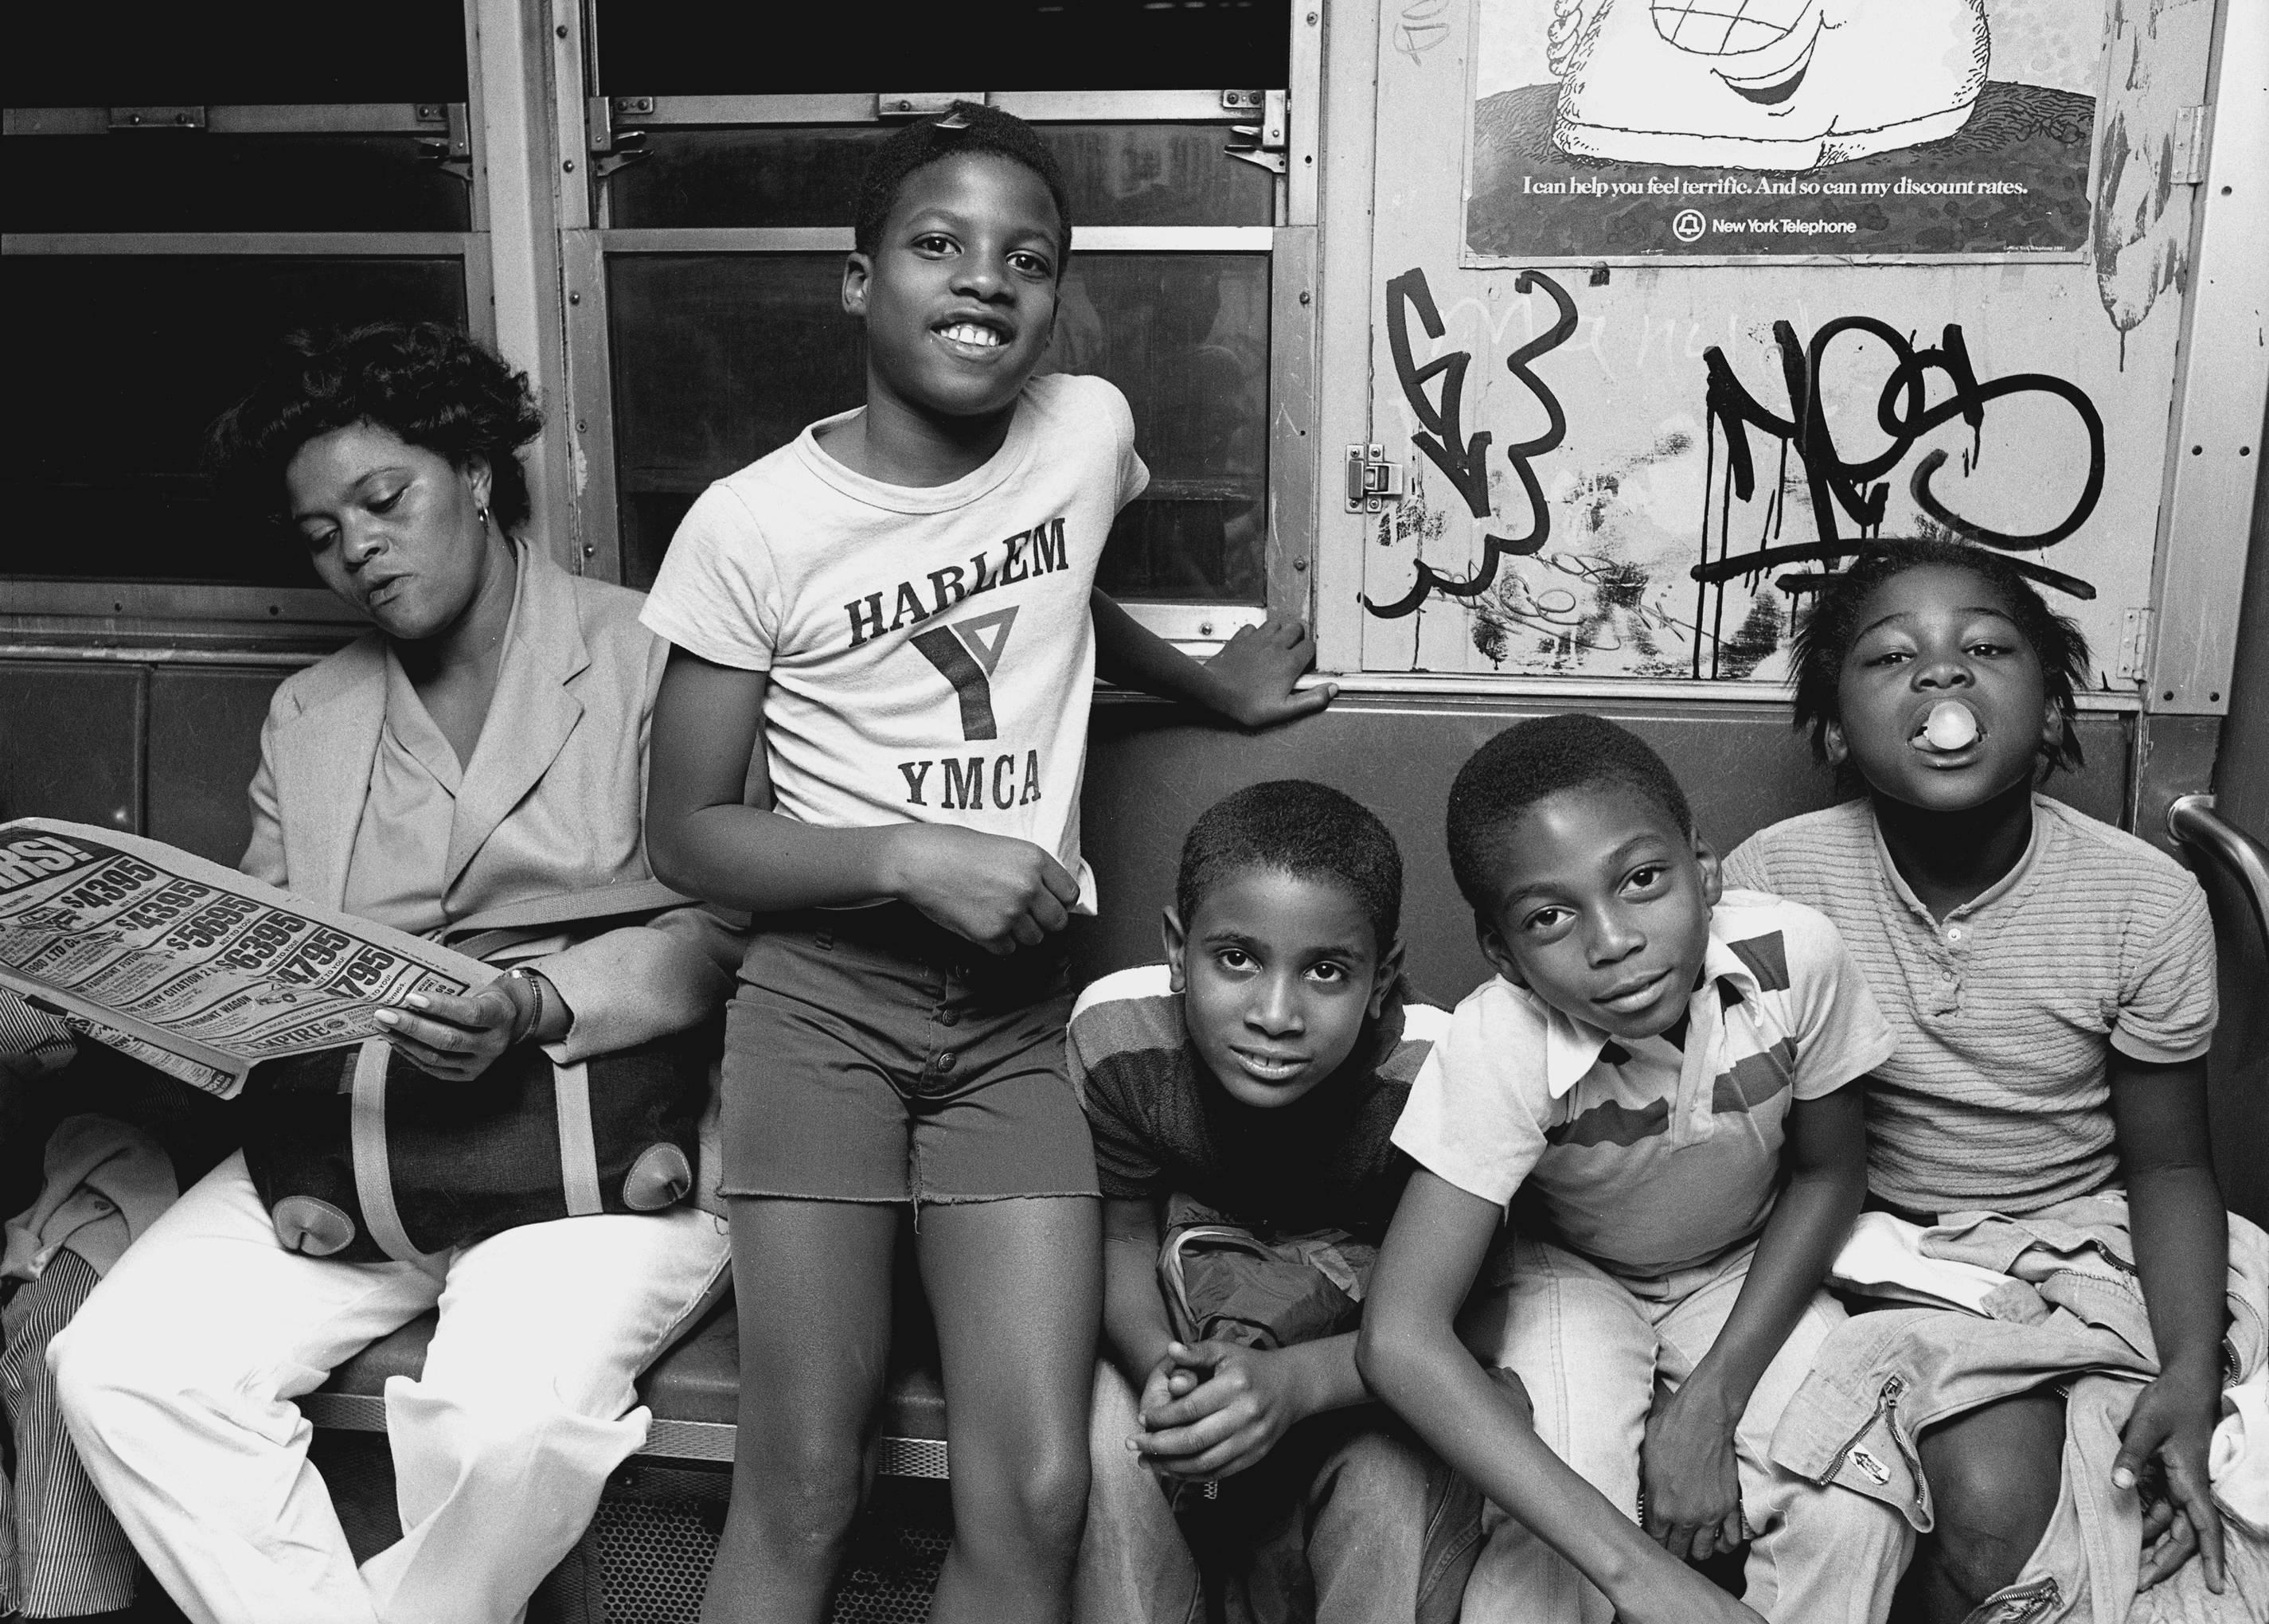 John Conn Black and White Photograph – Subway 30, Kids, 1980er Jahre, NYC, Schwarz-Weiß-Fotografie, Subway, limitierte Auflage.